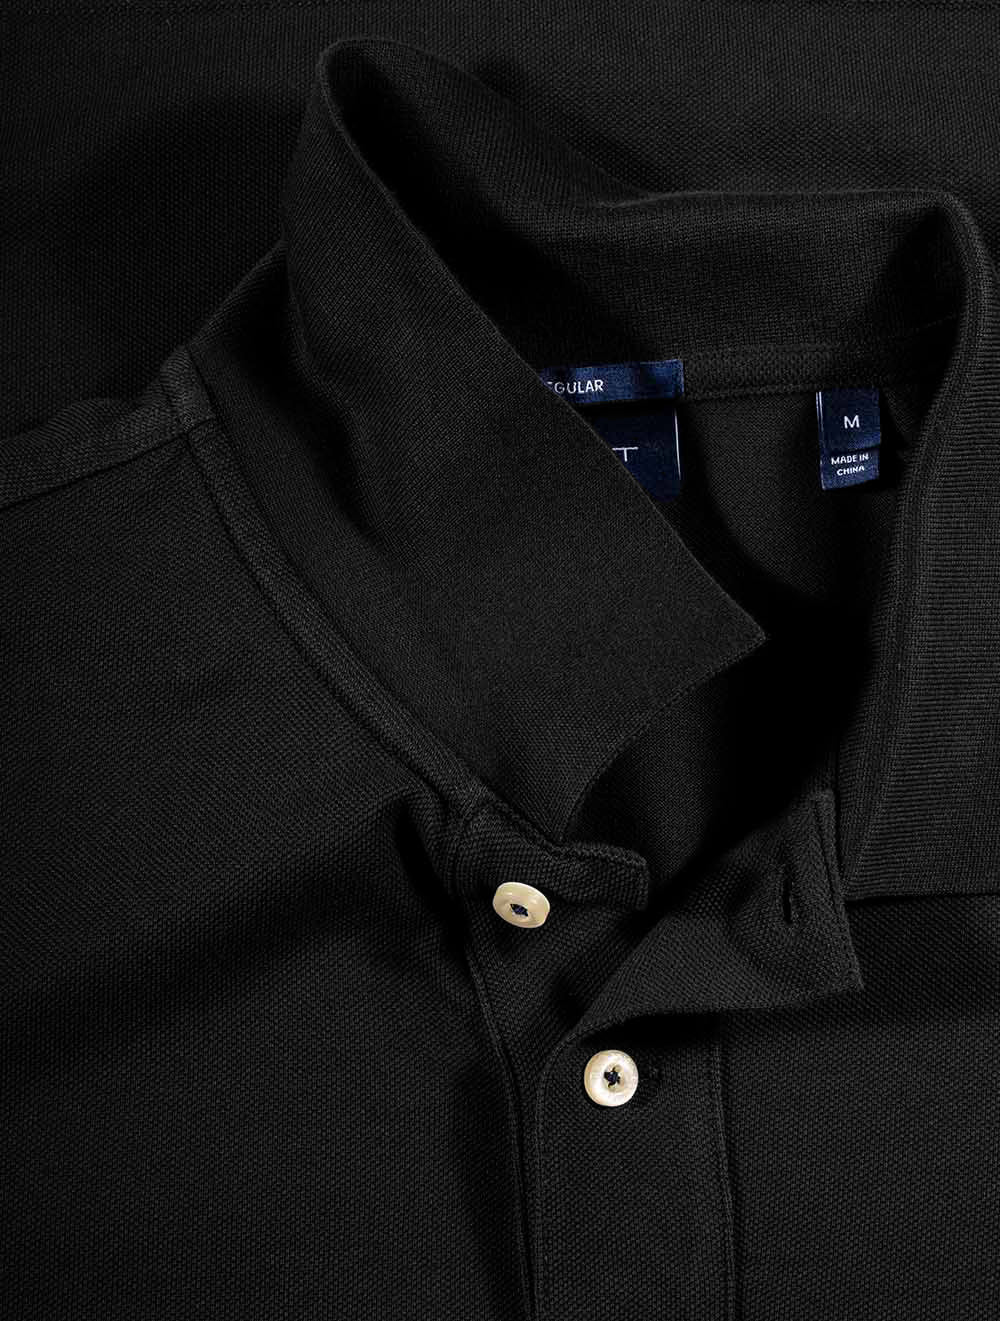 Original Piqué Polo Shirt Black